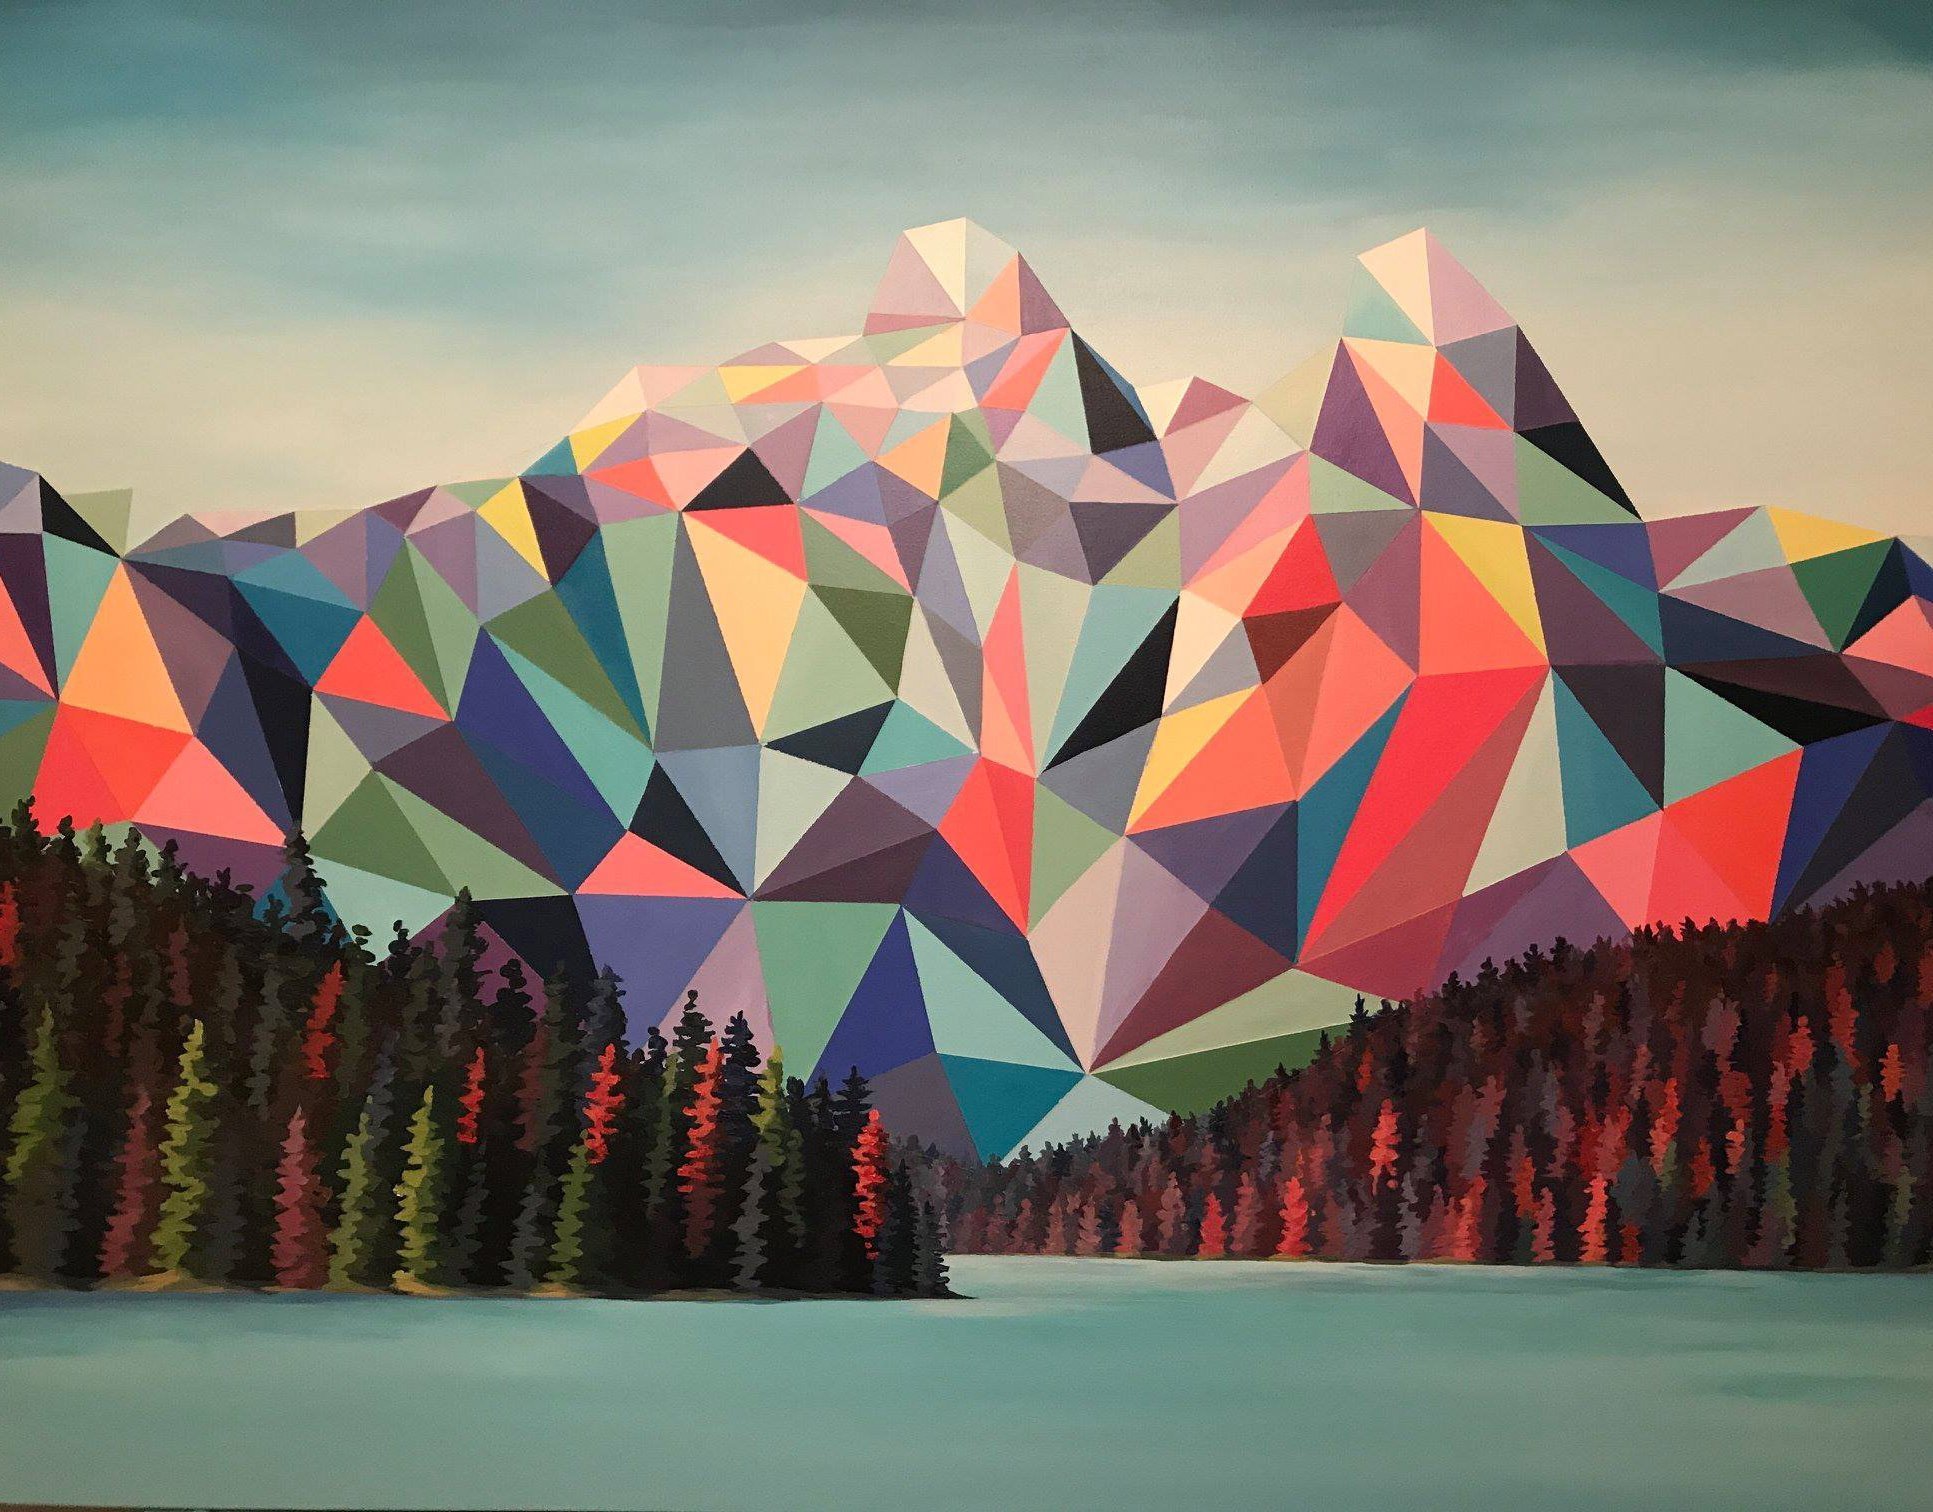 Картины квадратами и треугольниками. Окуда Сан Мигель художник. Маринистический пейзаж в кубизме. Стилизованный пейзаж. Геометрические формы в искусстве.